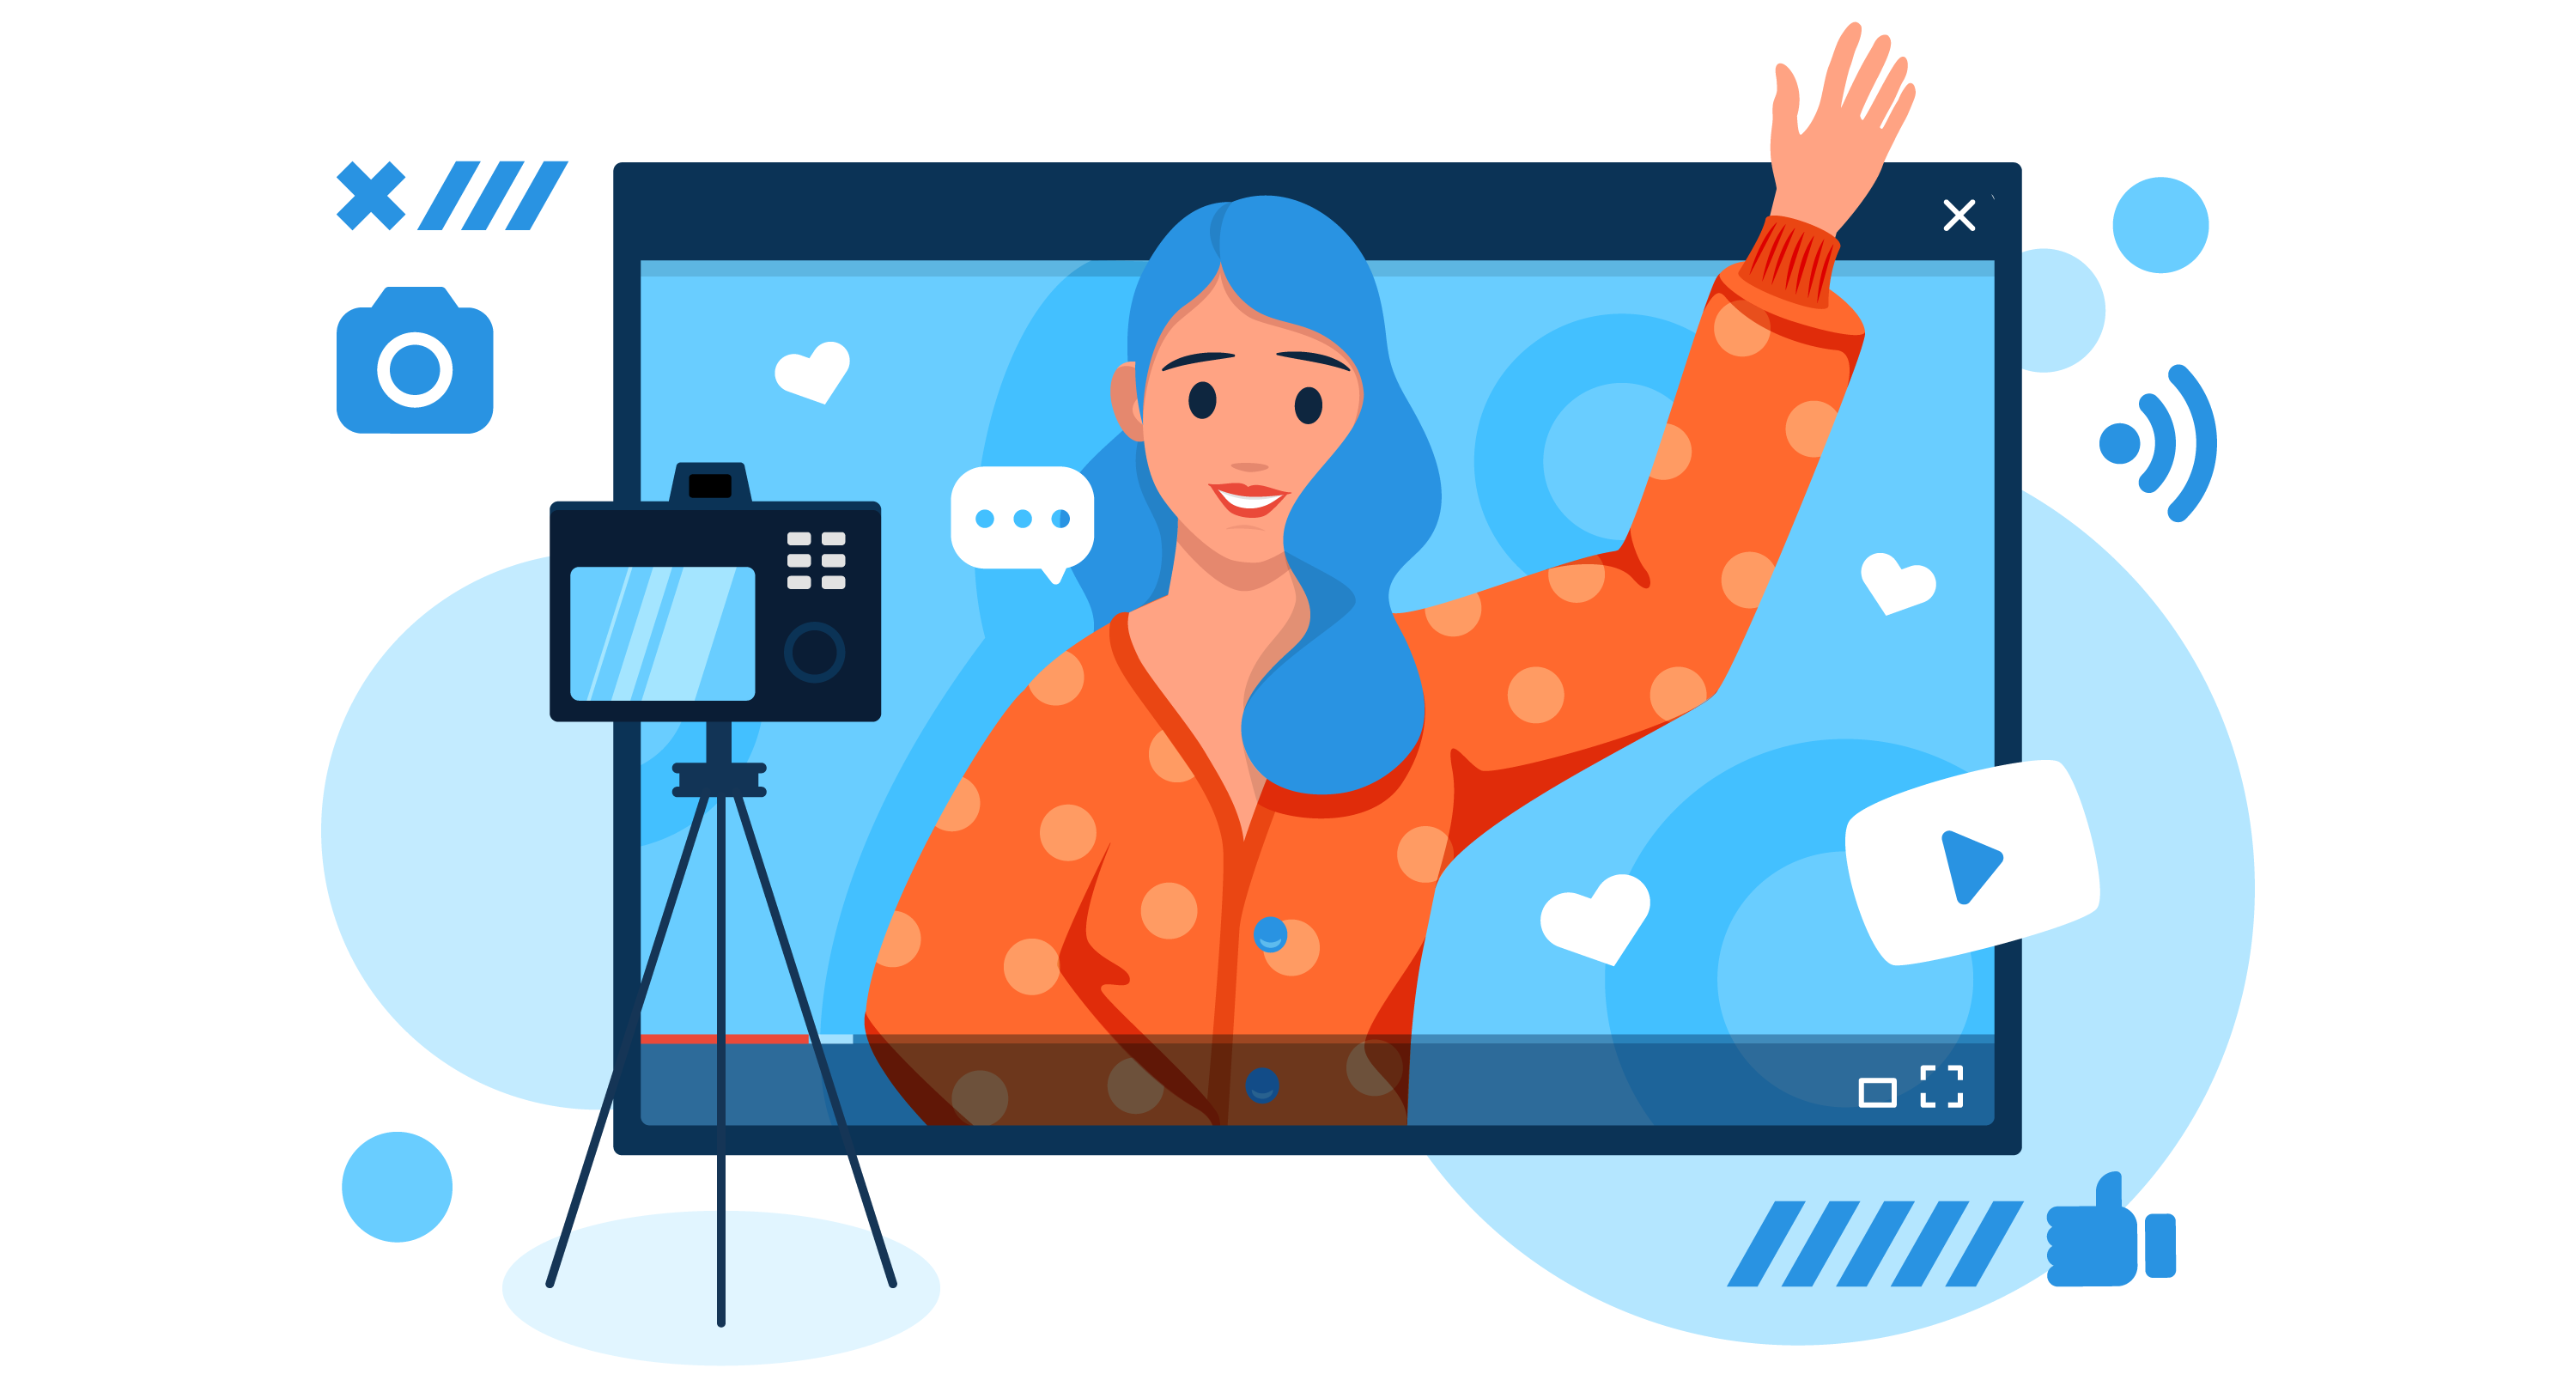 Quer uma ajudinha para gravar videoaulas de casa? Separamos as melhores dicas para tornar o ensino online próximo e produtivo.